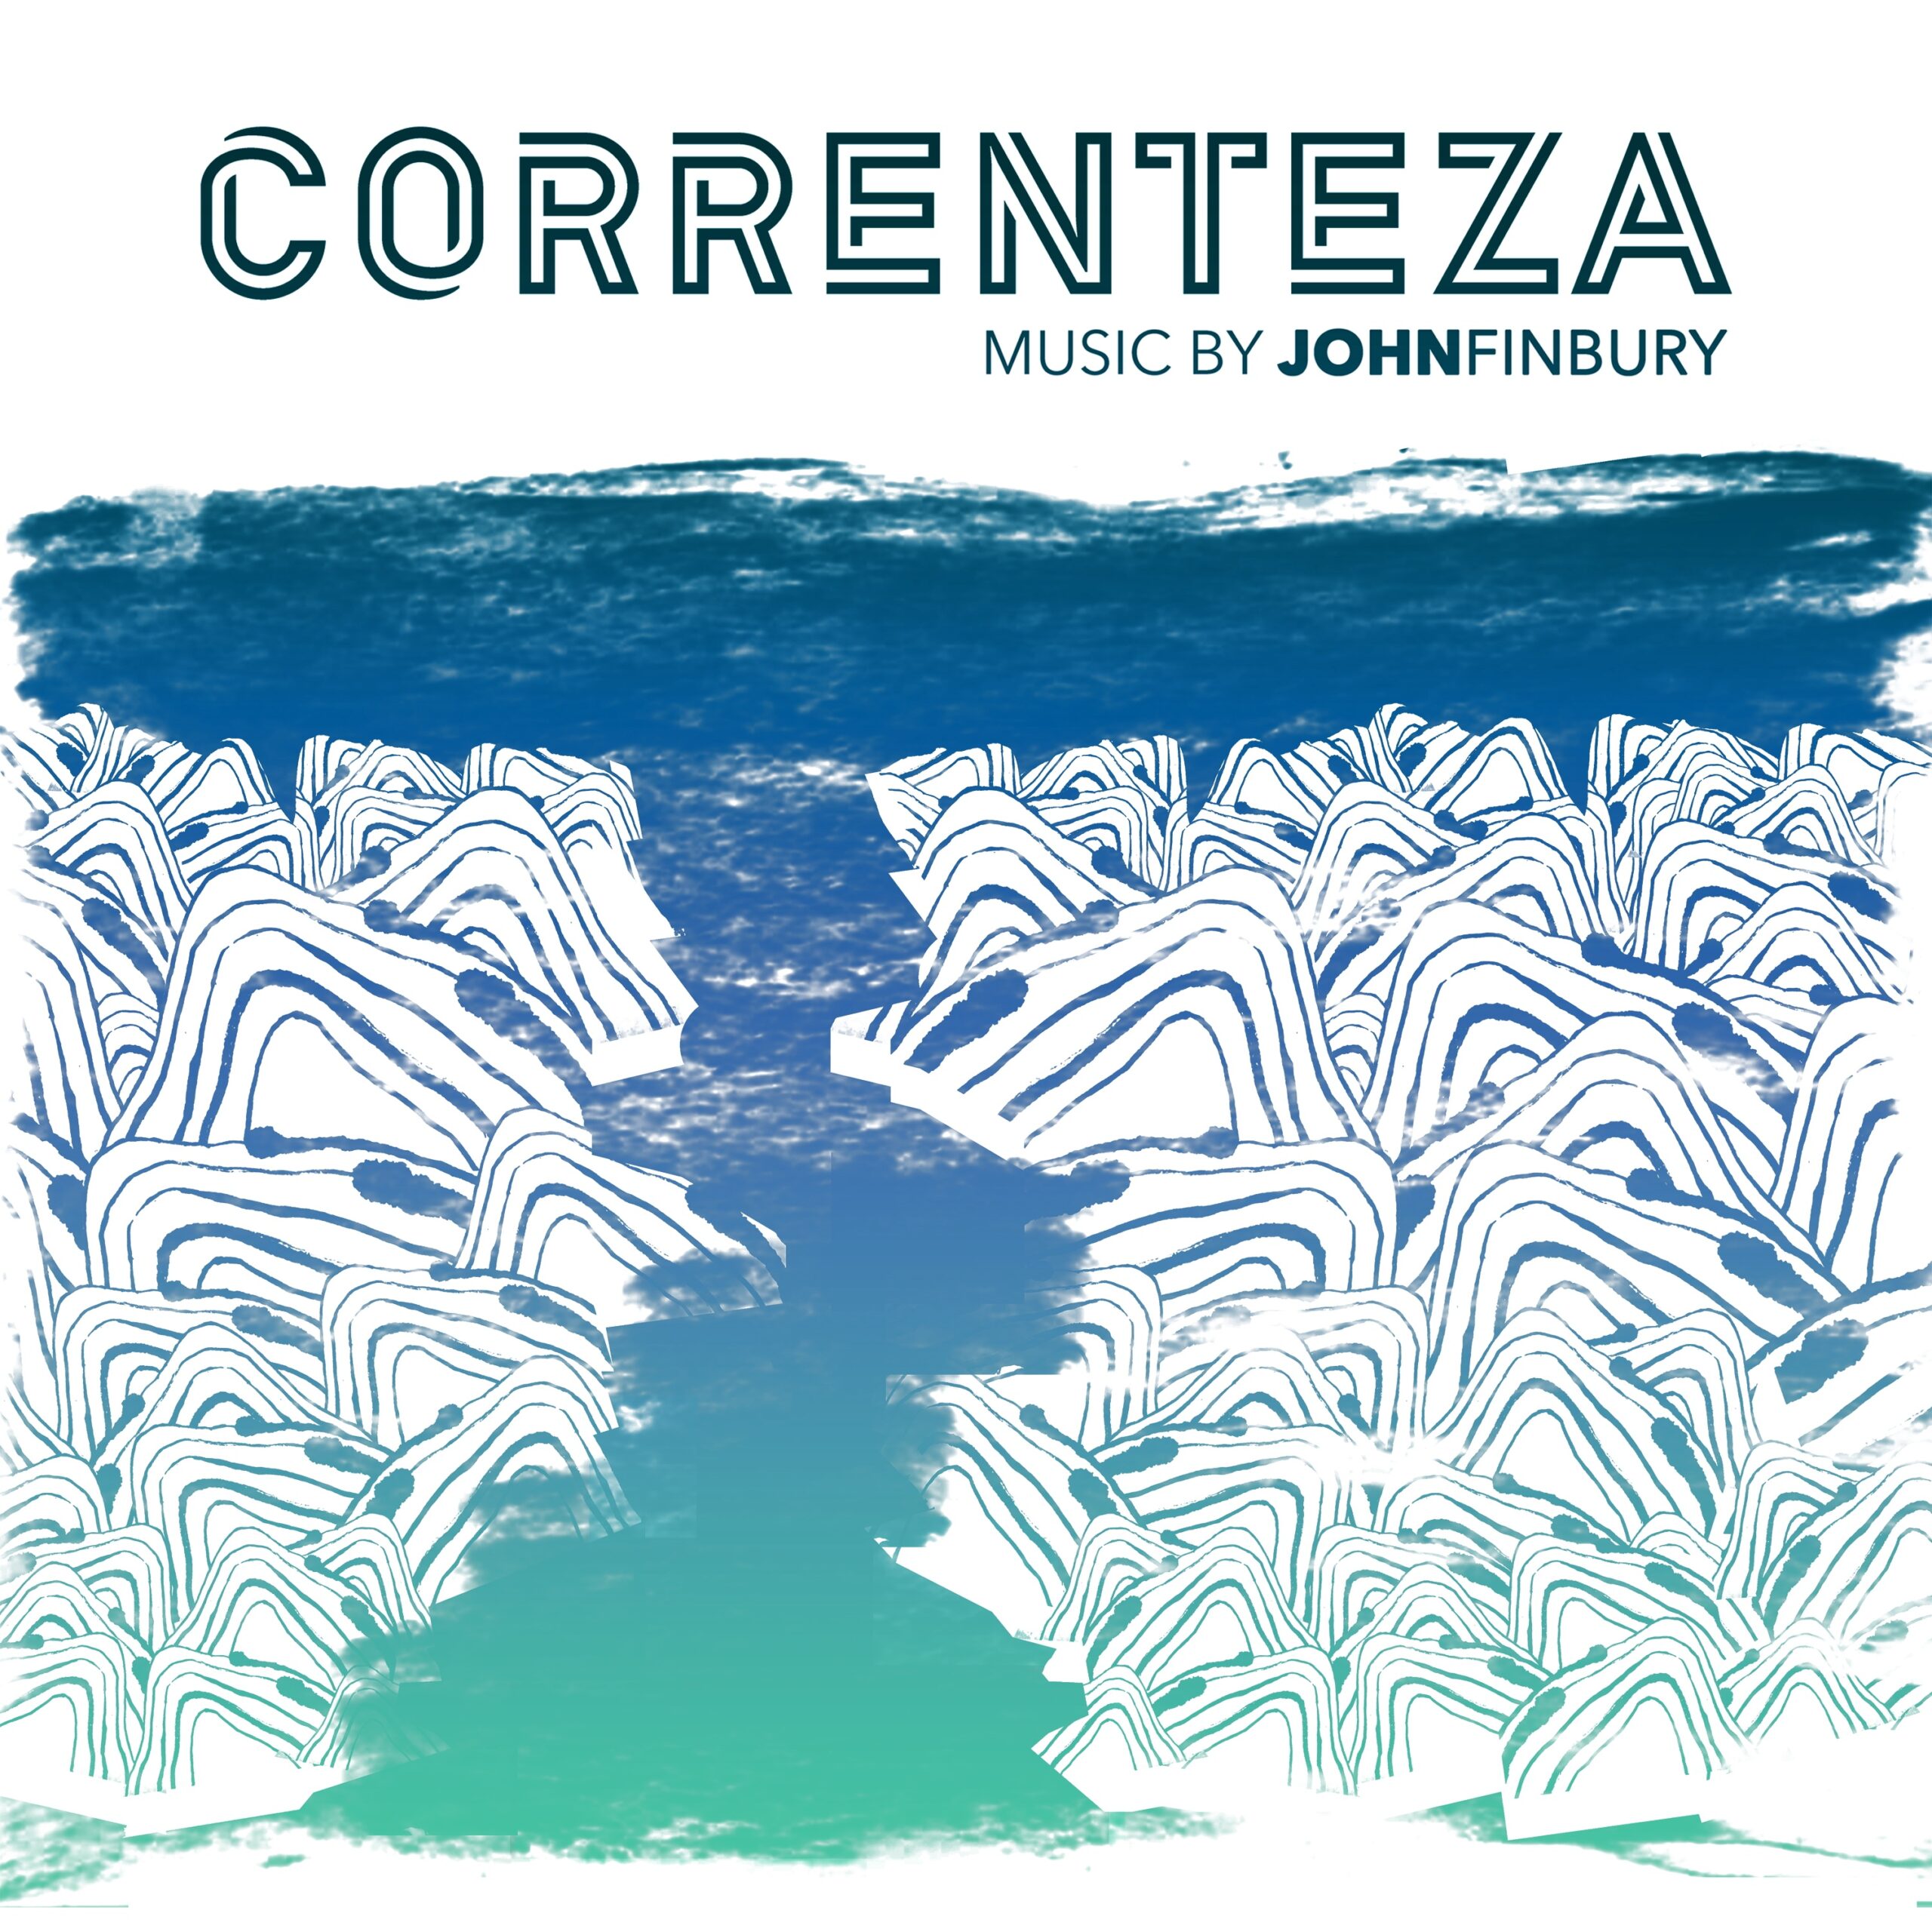 CORRENTEZA Album Cover Image